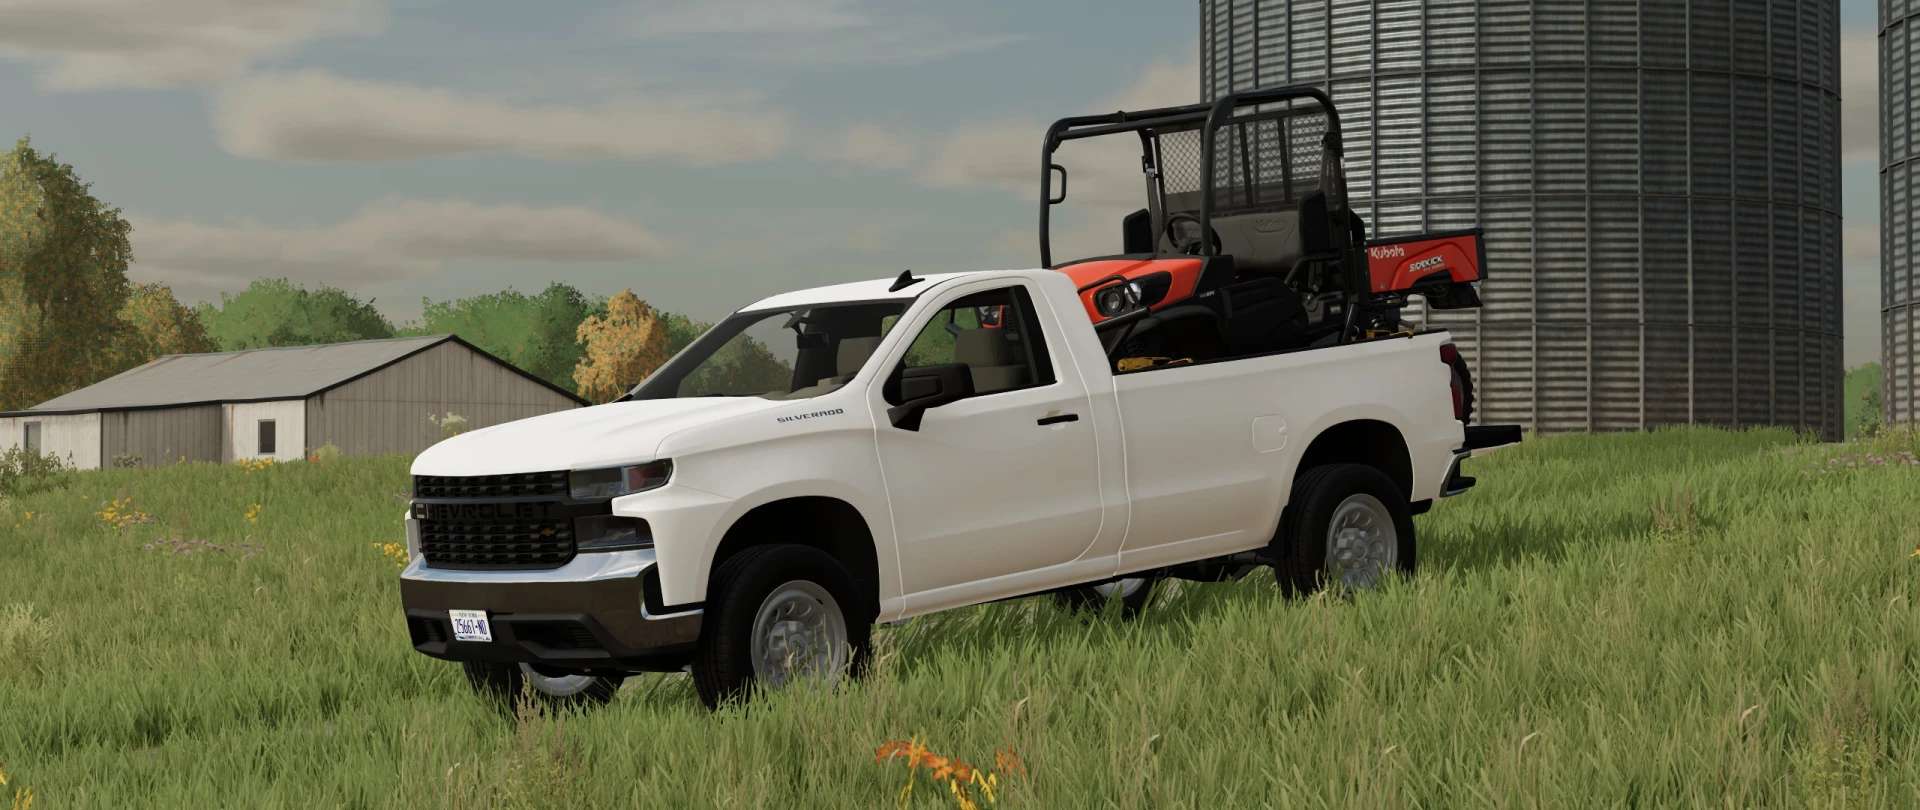 Silverado V Fs Farming Simulator Ls Mod | Hot Sex Picture